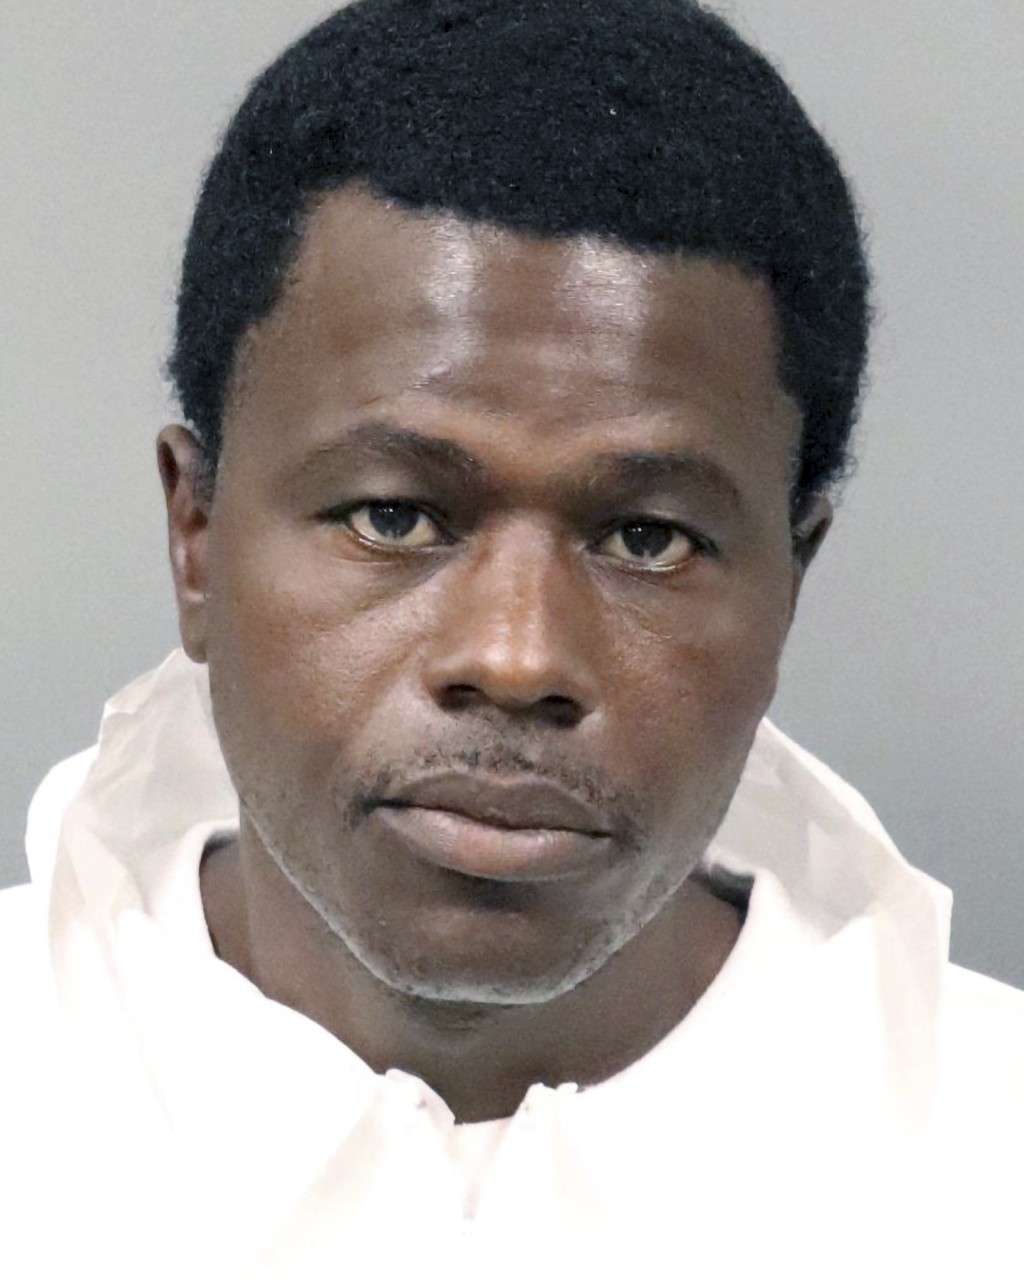 被捕者是43岁黑人男子布朗利。AP图片